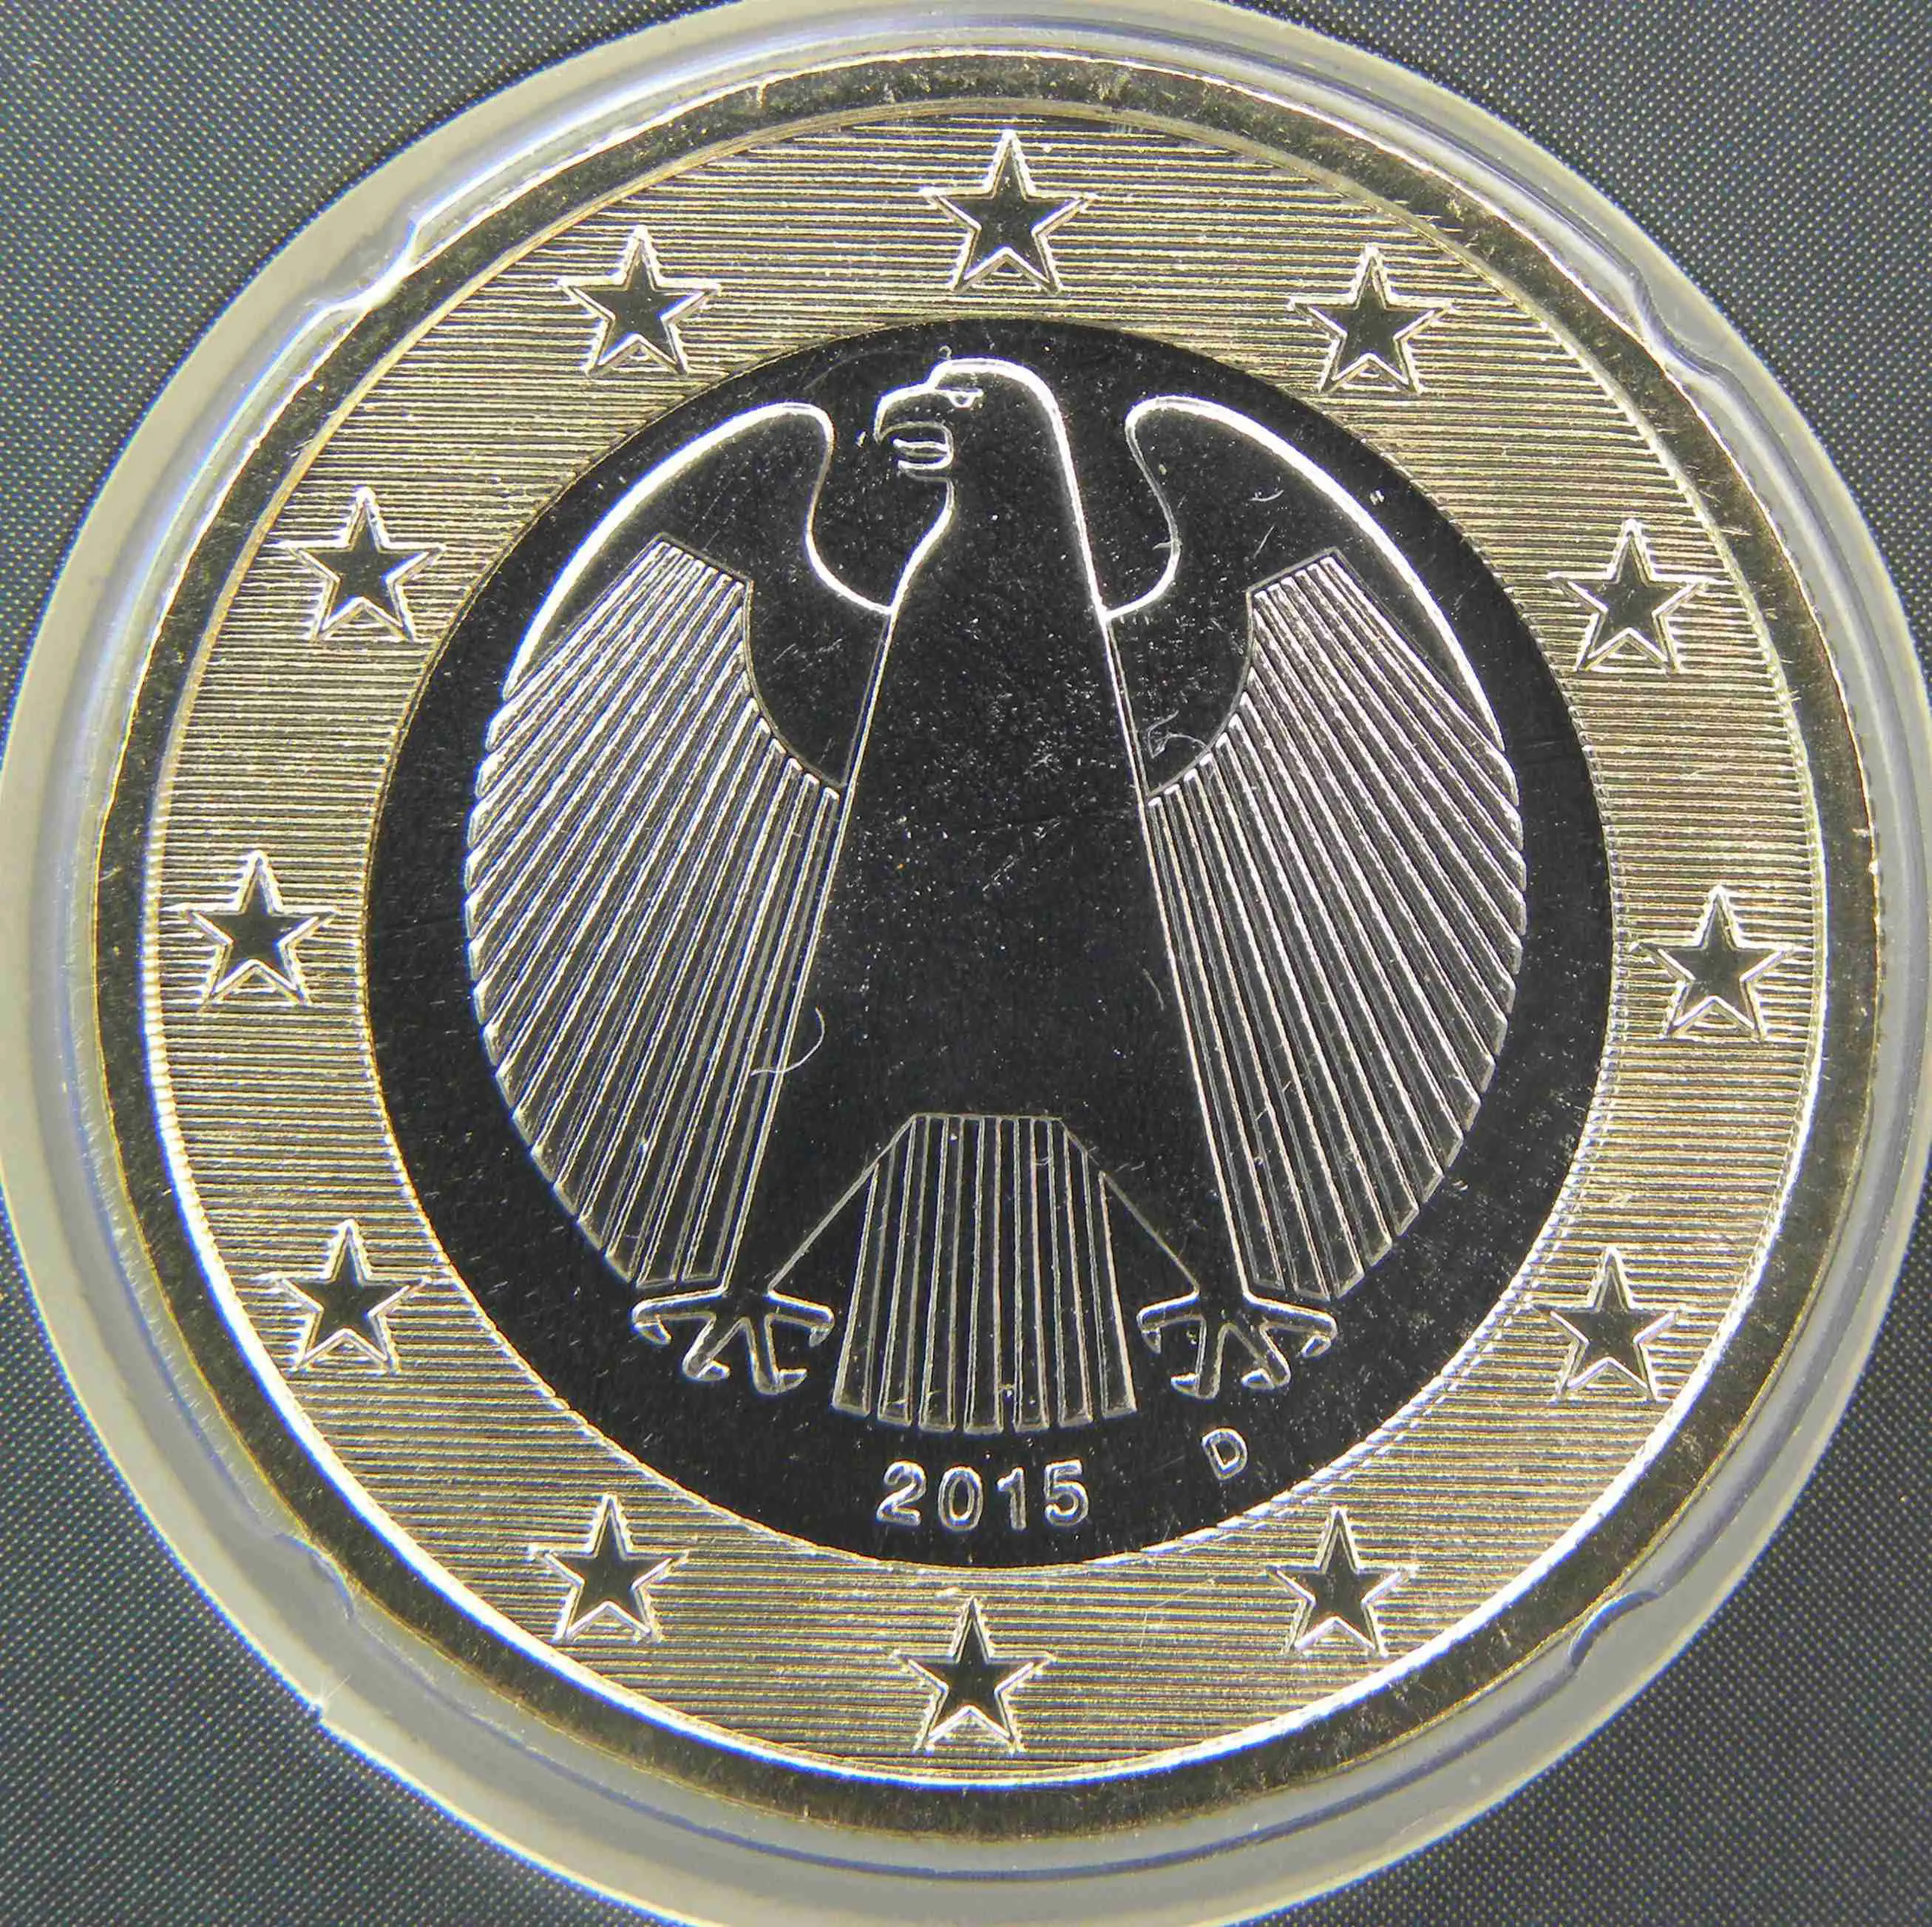 Deutschland 1 Euro Münze 2015 D - euro-muenzen.tv - Der Online